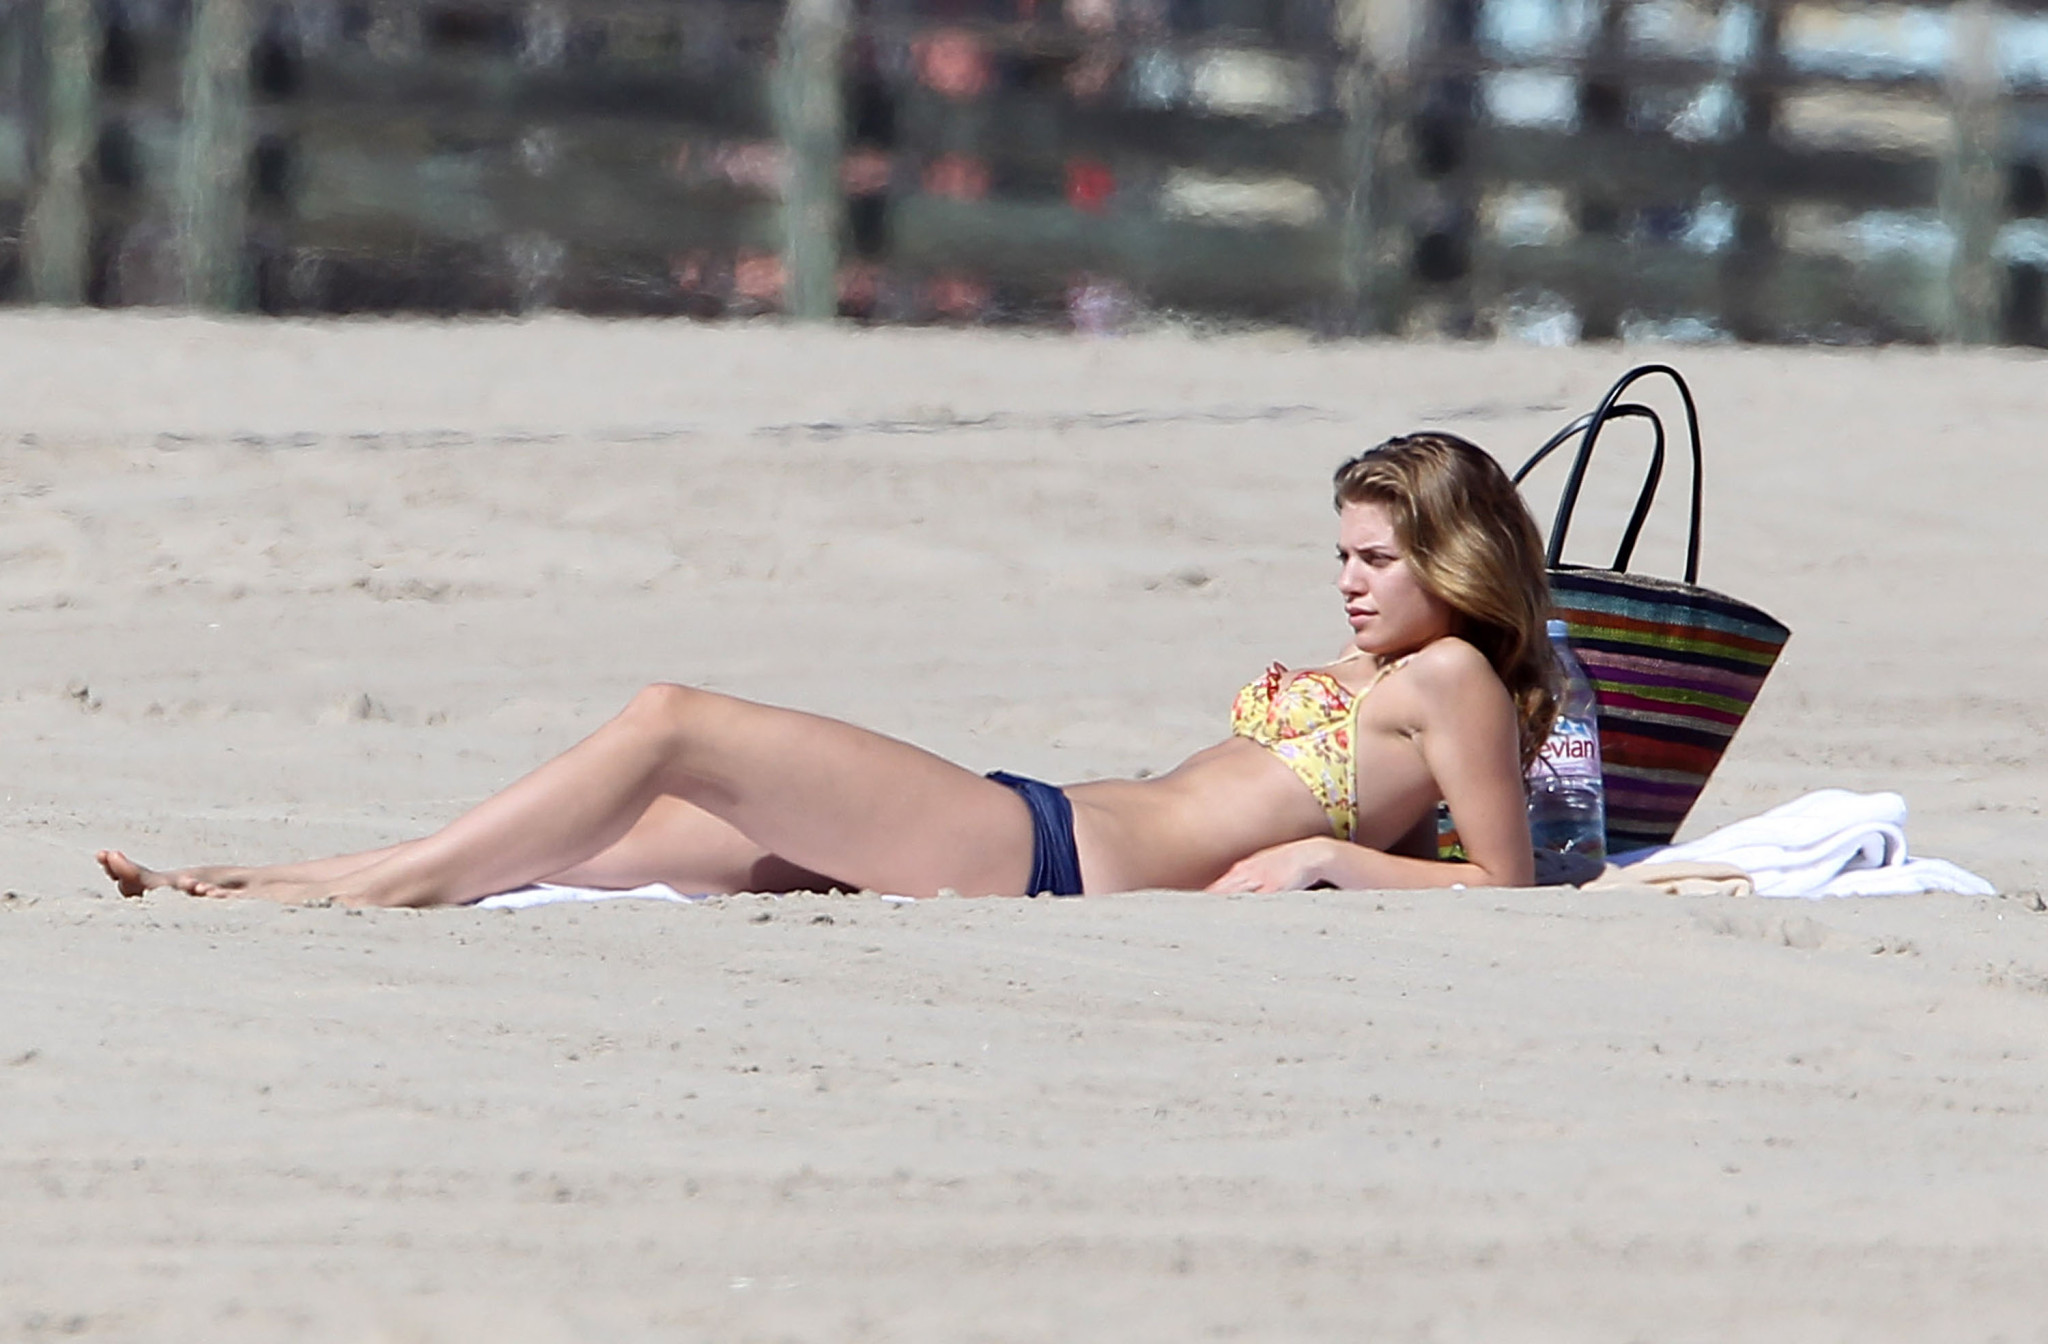 Annalynne mccord zeigt ihren arsch in einem altmodischen bikini am strand in cali
 #75272704